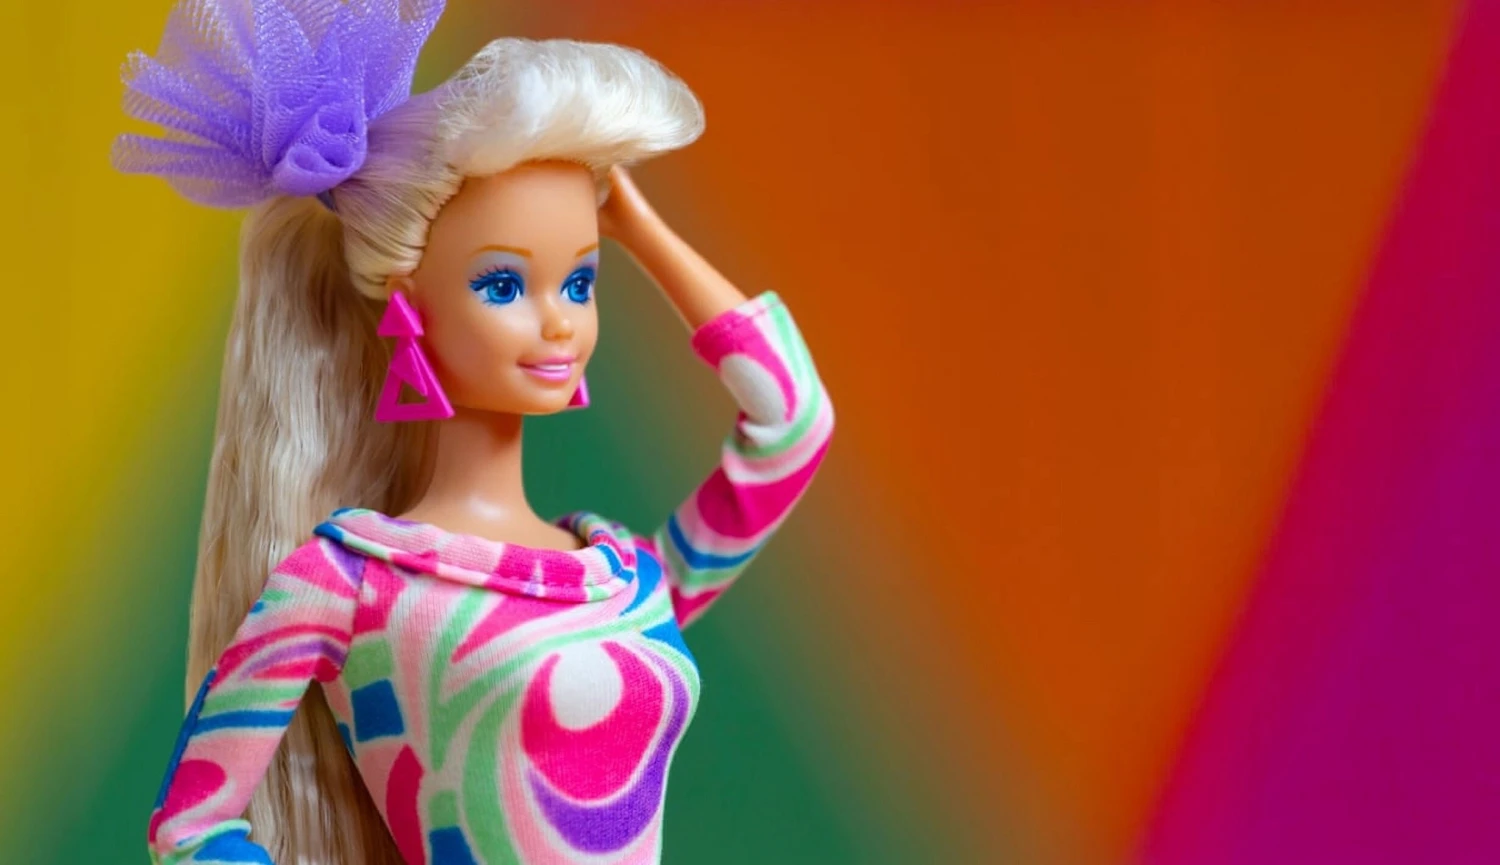 Od panenky v plavkách až na filmové plátno. Výstava oslavuje 65 let Barbie